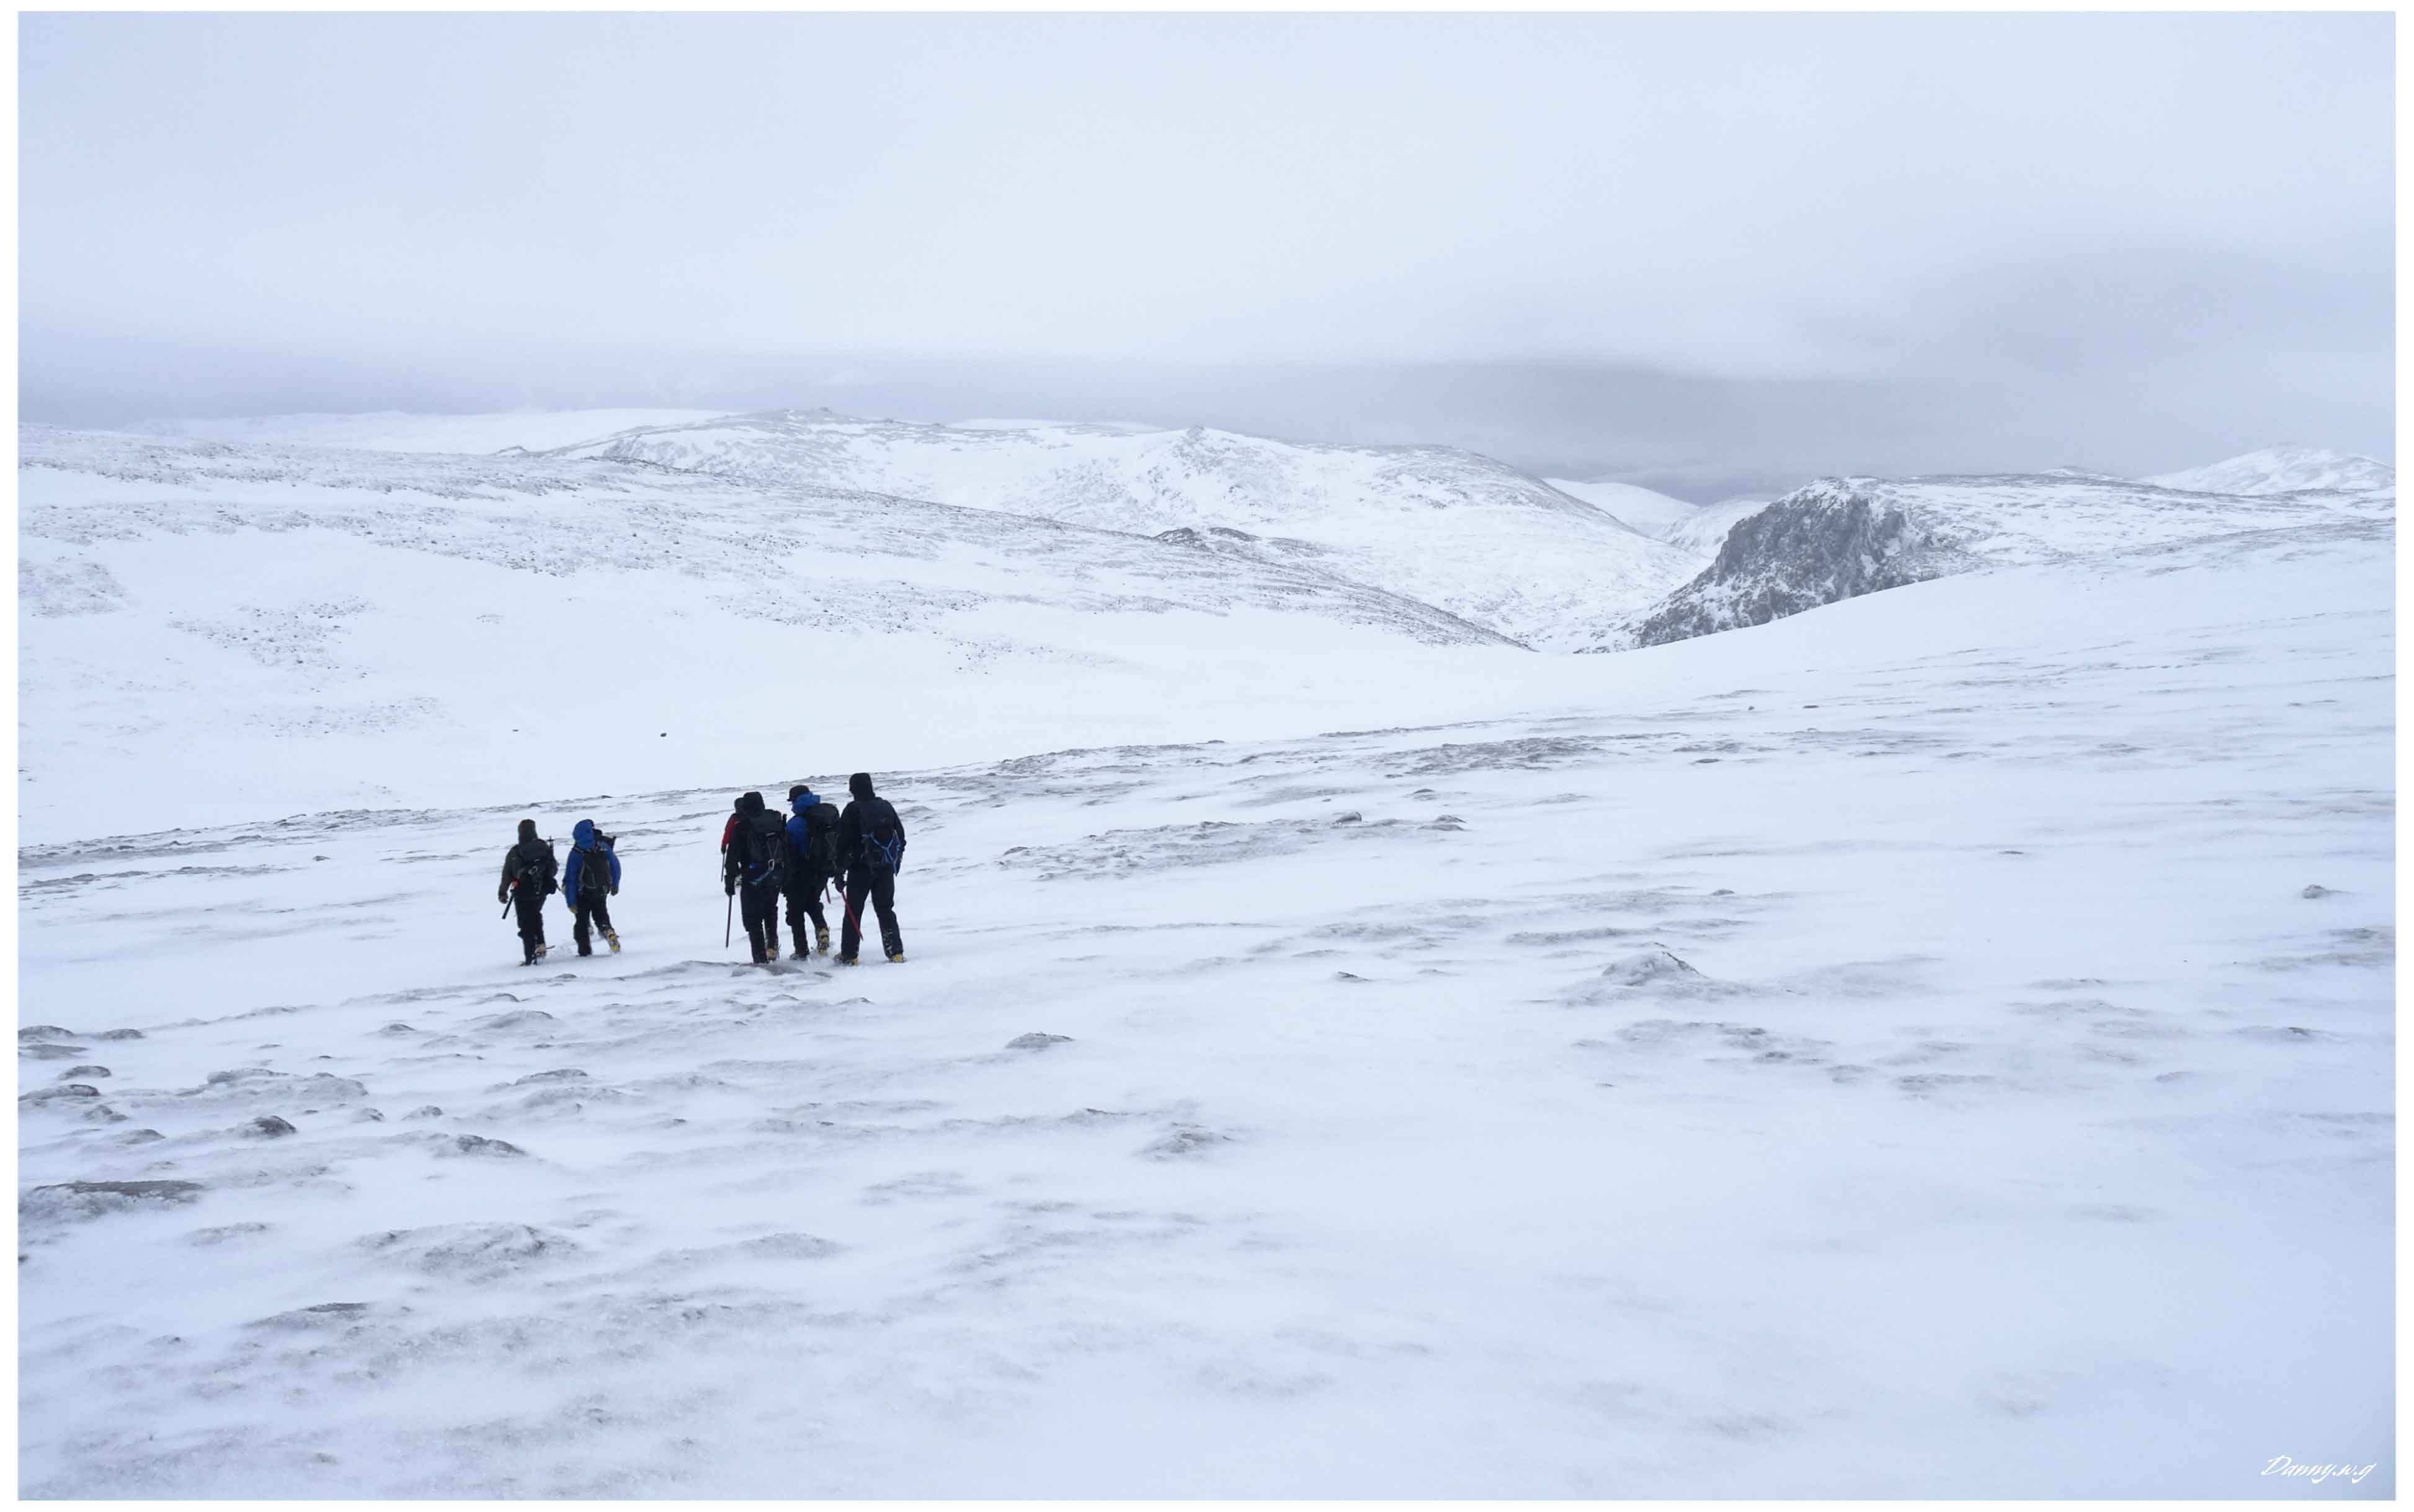 Scottish winter mountaineering